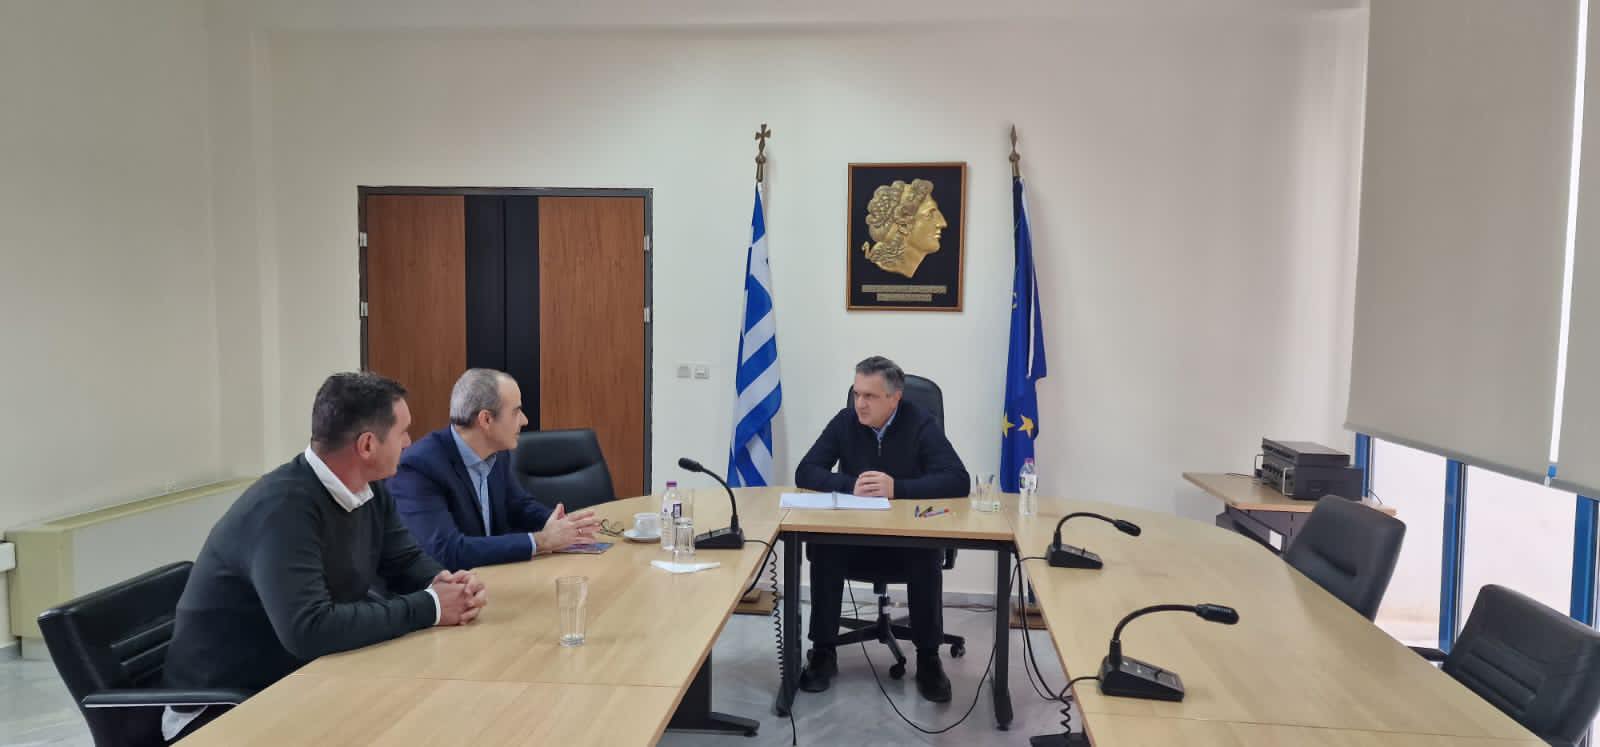 Συνάντηση του Περιφερειάρχη Δυτικής Μακεδονίας Γεώργιου Κασαπίδη με τον Πρόεδρο του Κέντρου Κοινωνικής Πρόνοιας και τον Αντιπρόεδρο